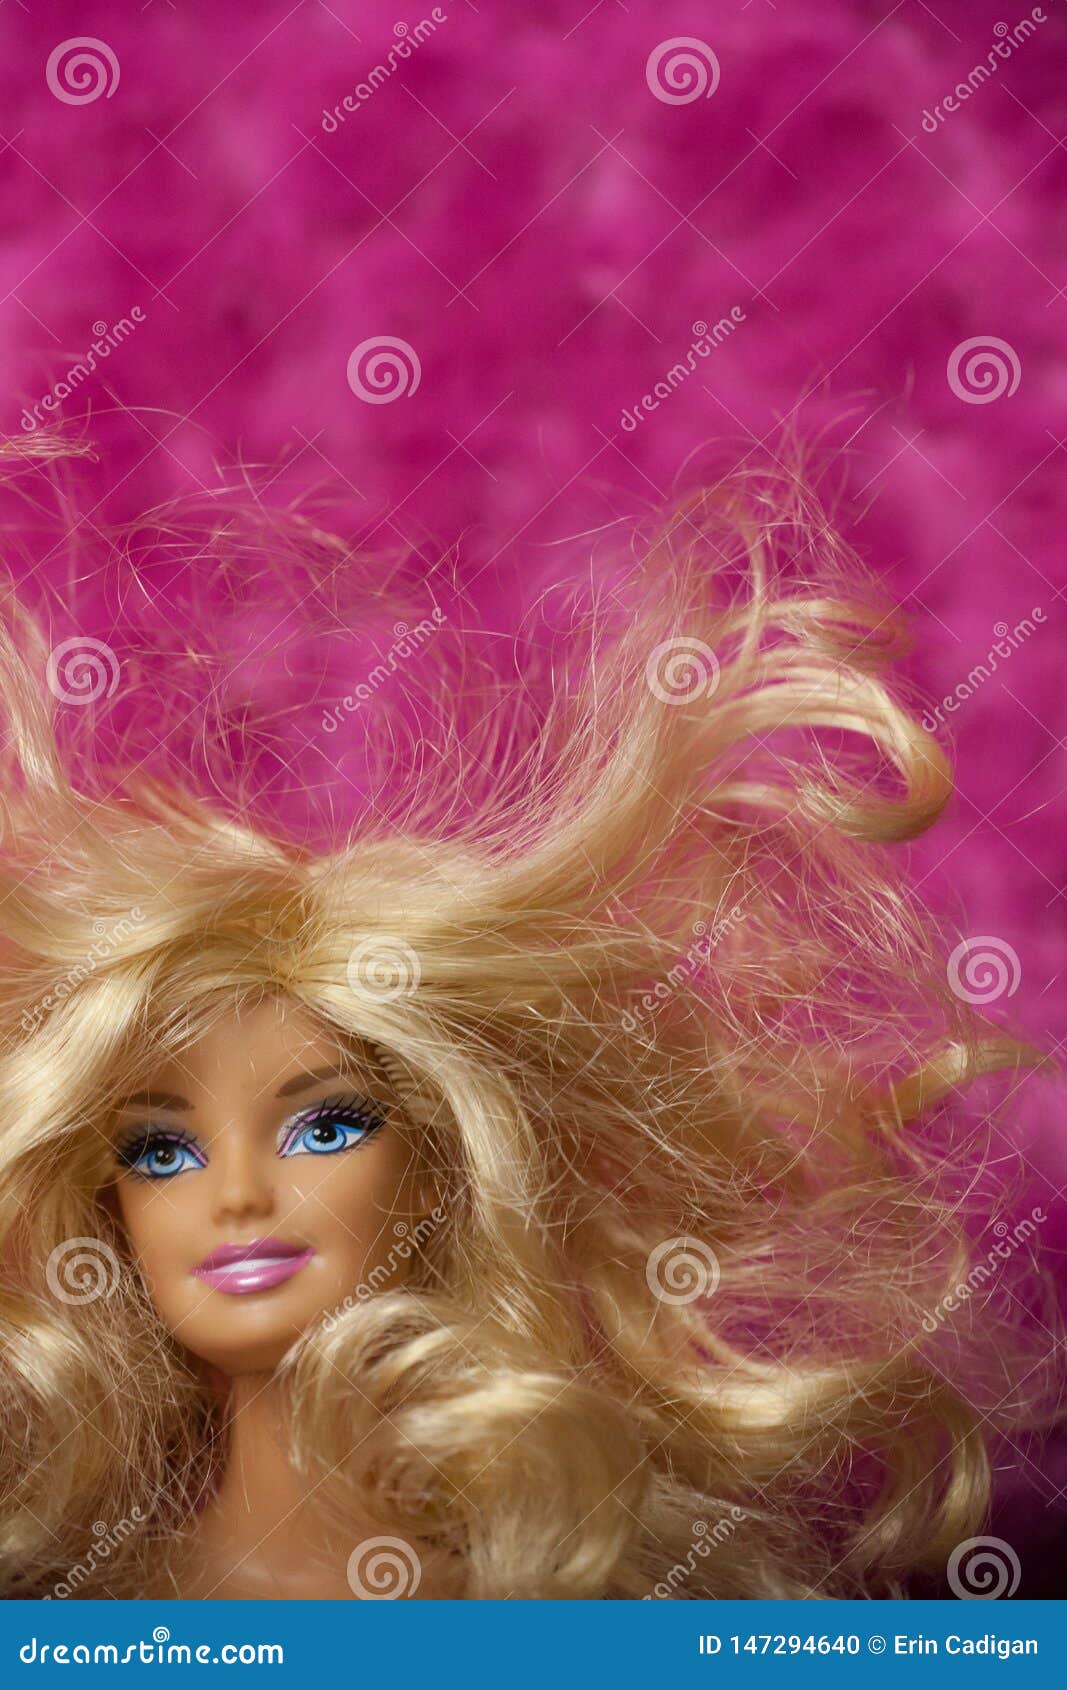 messy hair barbie